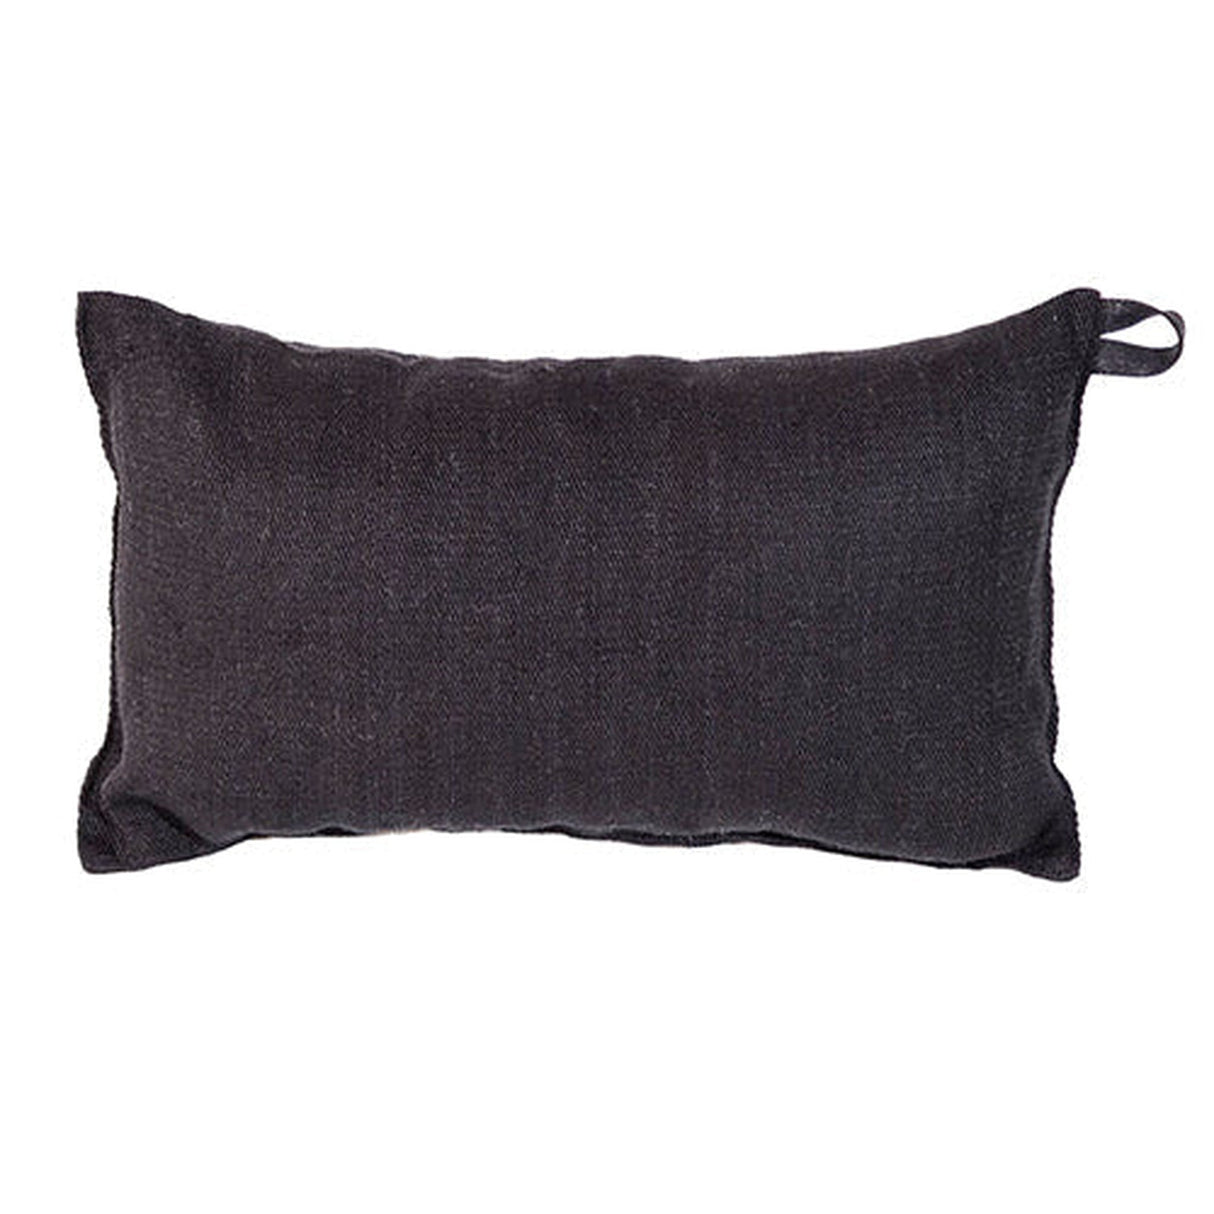 Auroom | Black Natural Linen & Cotton Blend Sauna Pillow